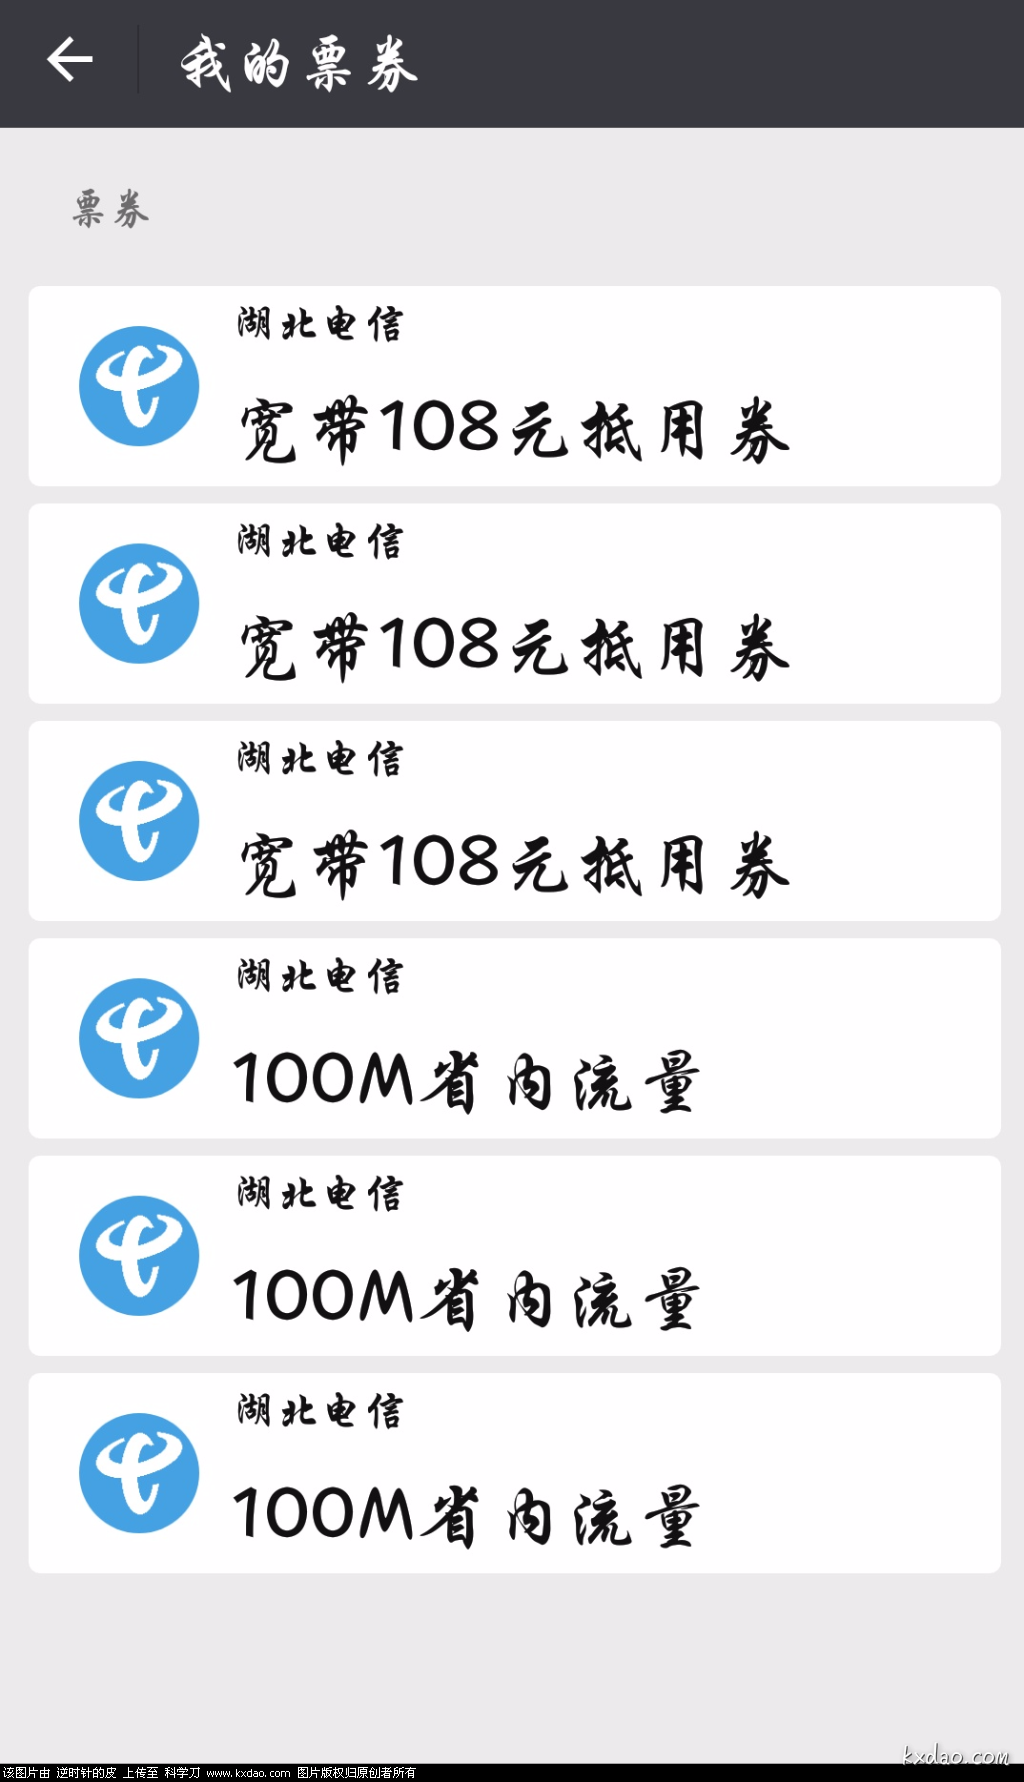 Screenshot_2018-05-16-14-32-06-894_com.tencent.mm.png